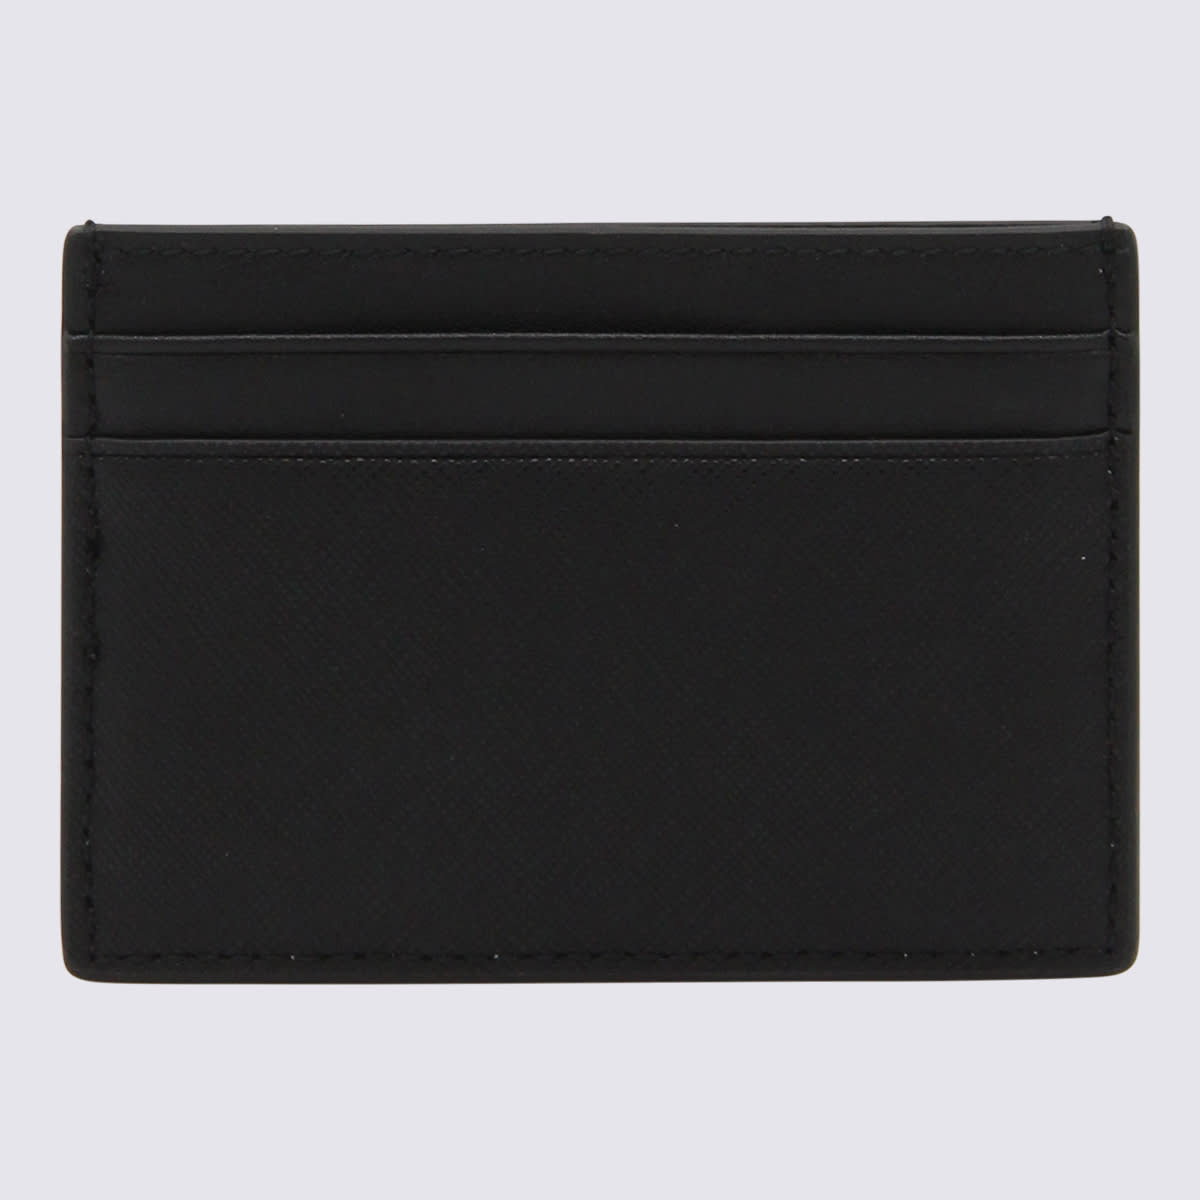 Shop Bally Black Leather Cardholder